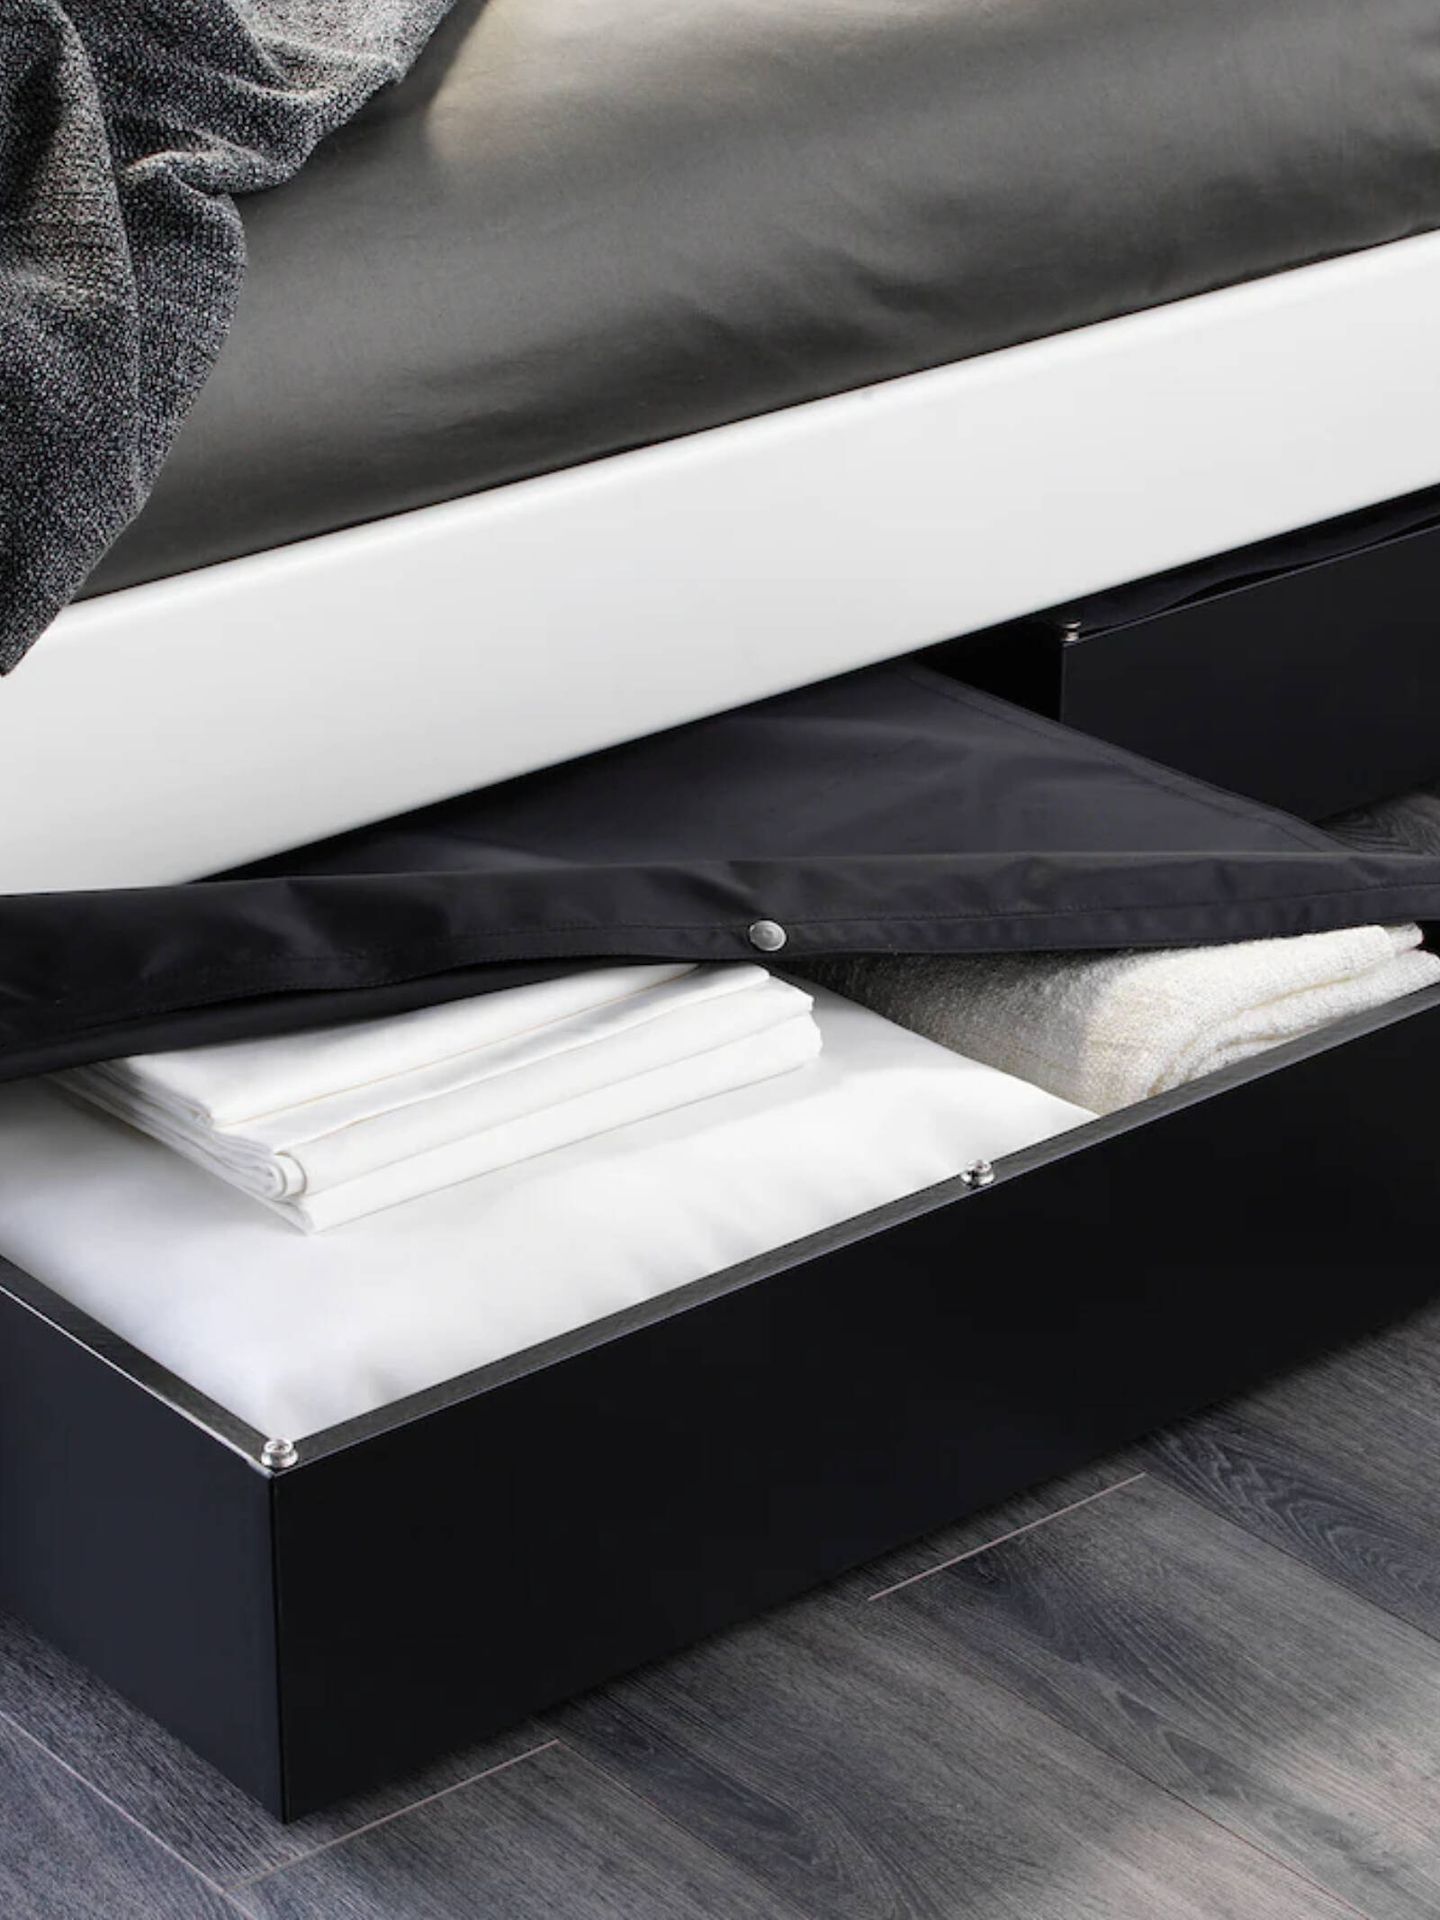 Soluciones deco para dormitorios pequeños y a buen precio. (Cortesía/Ikea)